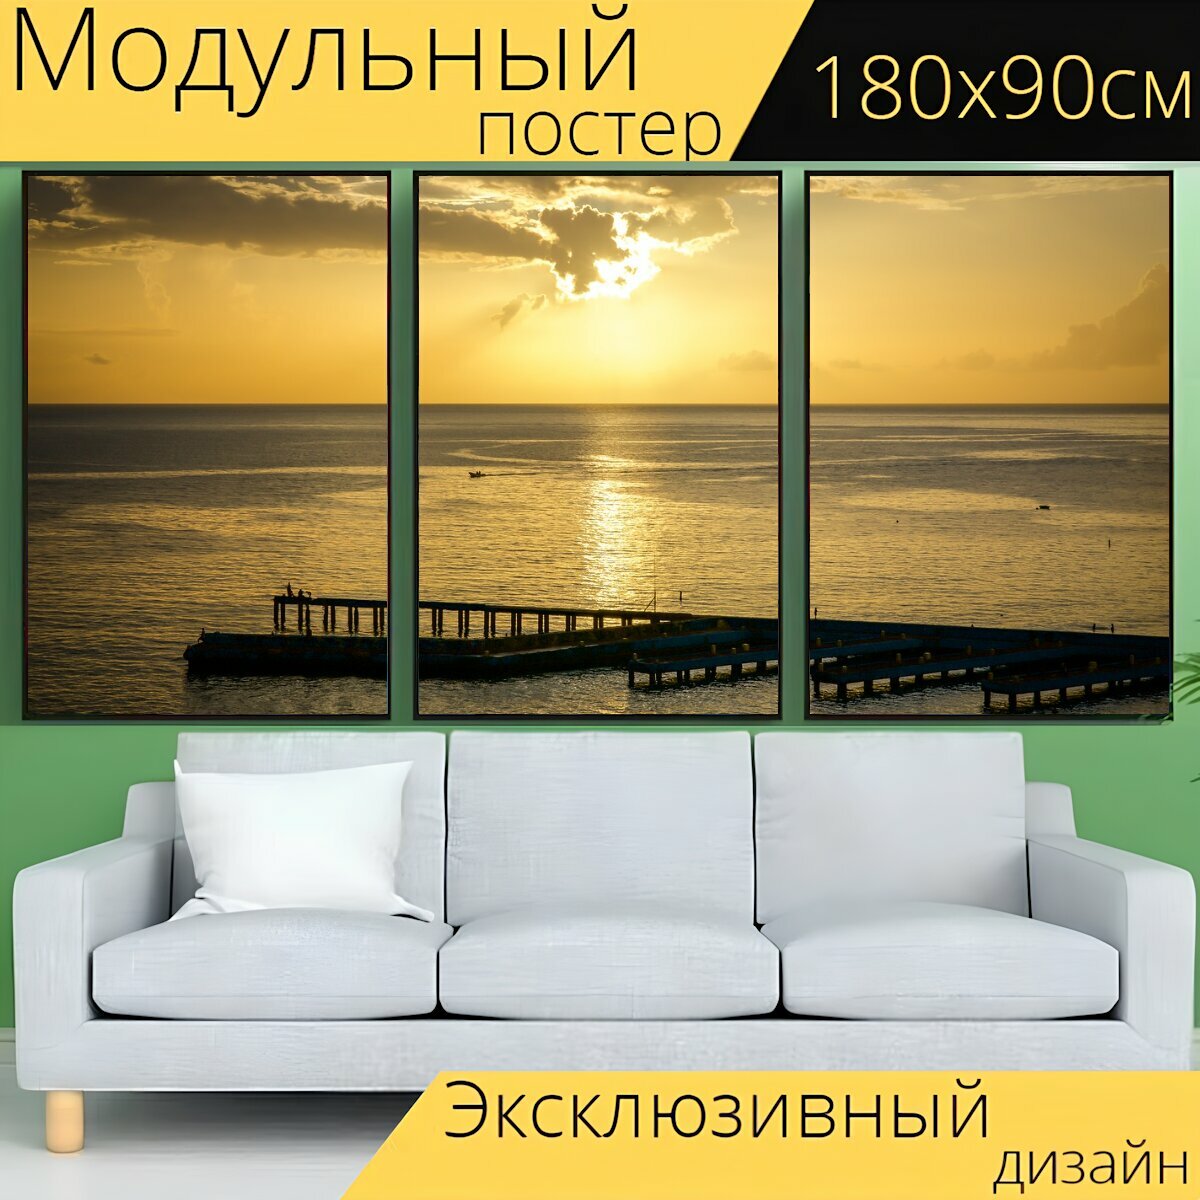 Модульный постер "Солнце садится, солнце, мост" 180 x 90 см. для интерьера